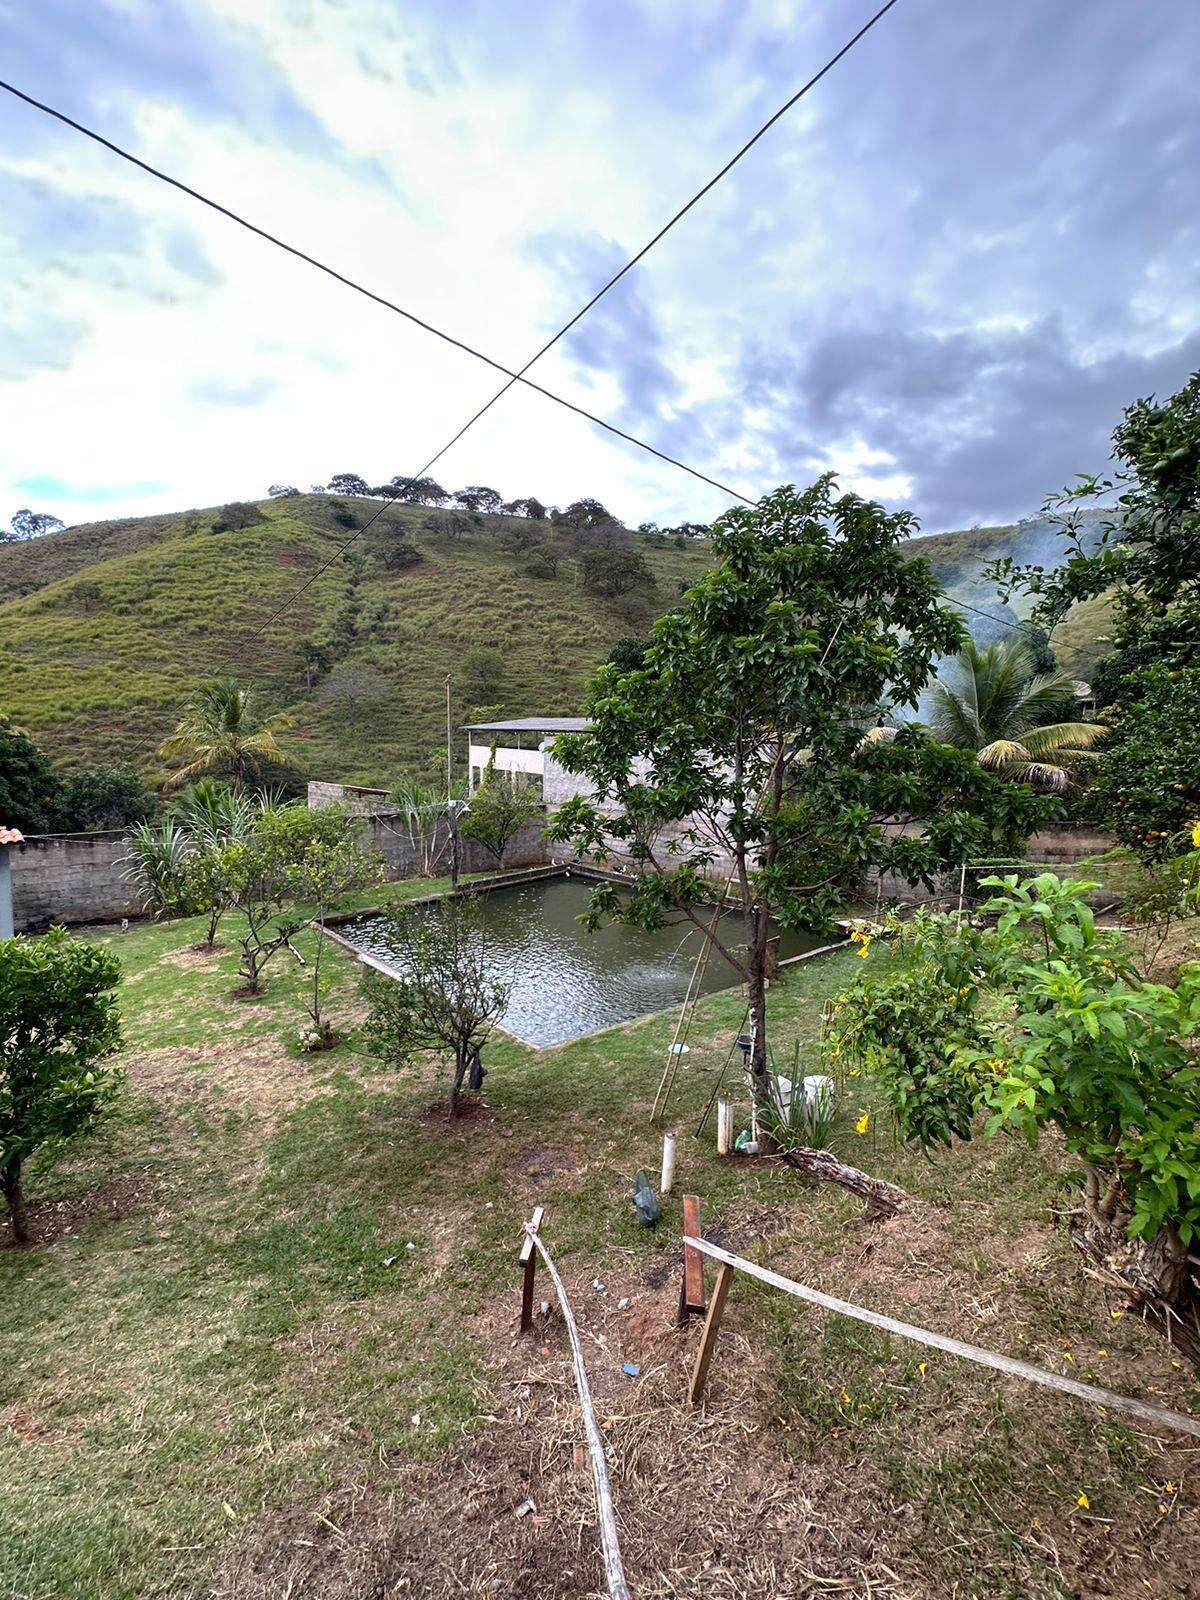 Lote-Área-Terreno à venda no Córrego Seco: d3e47618-9-whatsapp-image-2023-04-19-at-14.19.26-1.jpeg